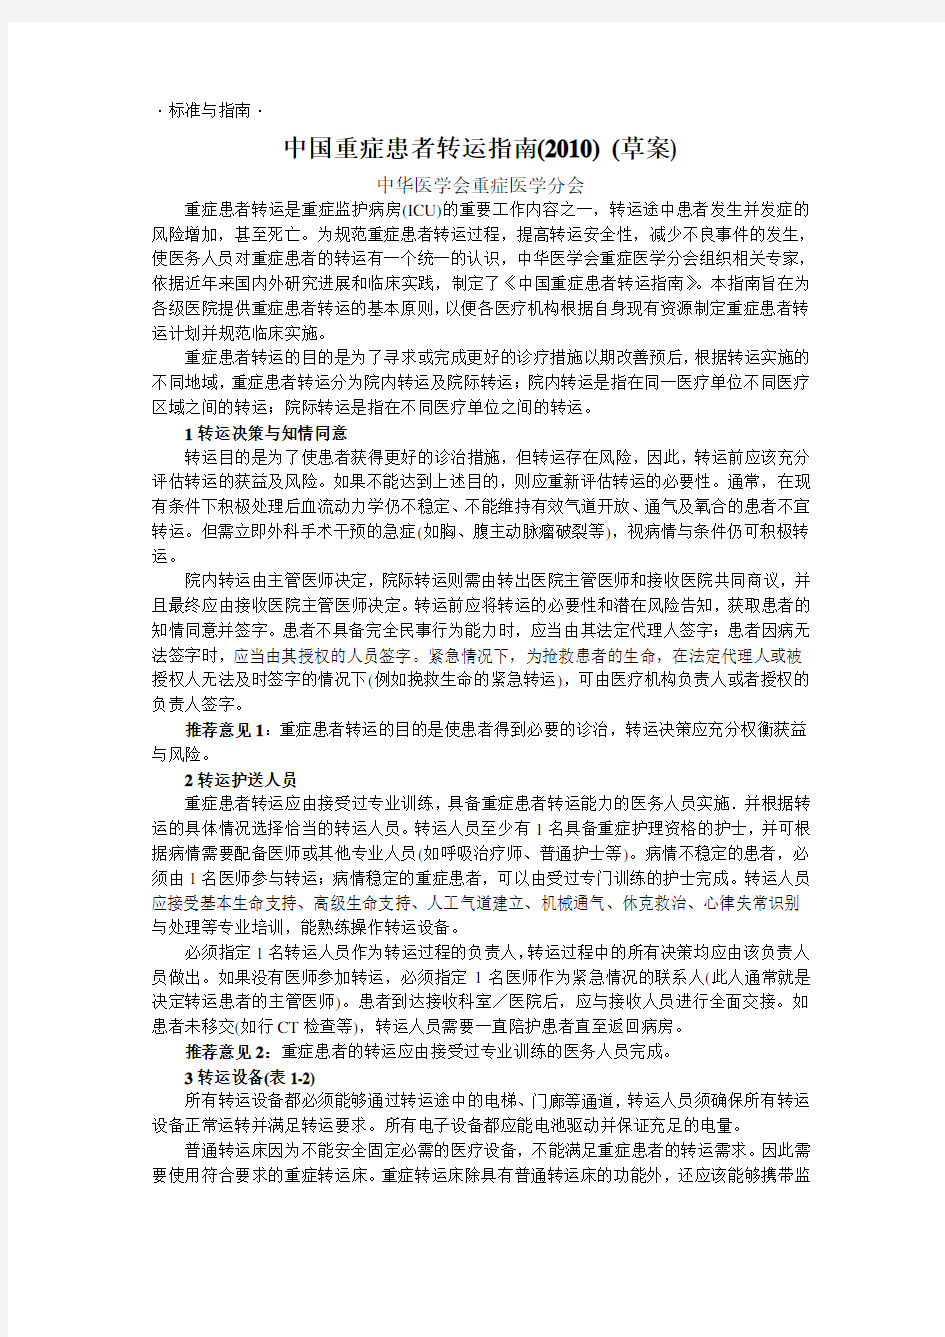 中国重症患者转运指南(2010) (草案)